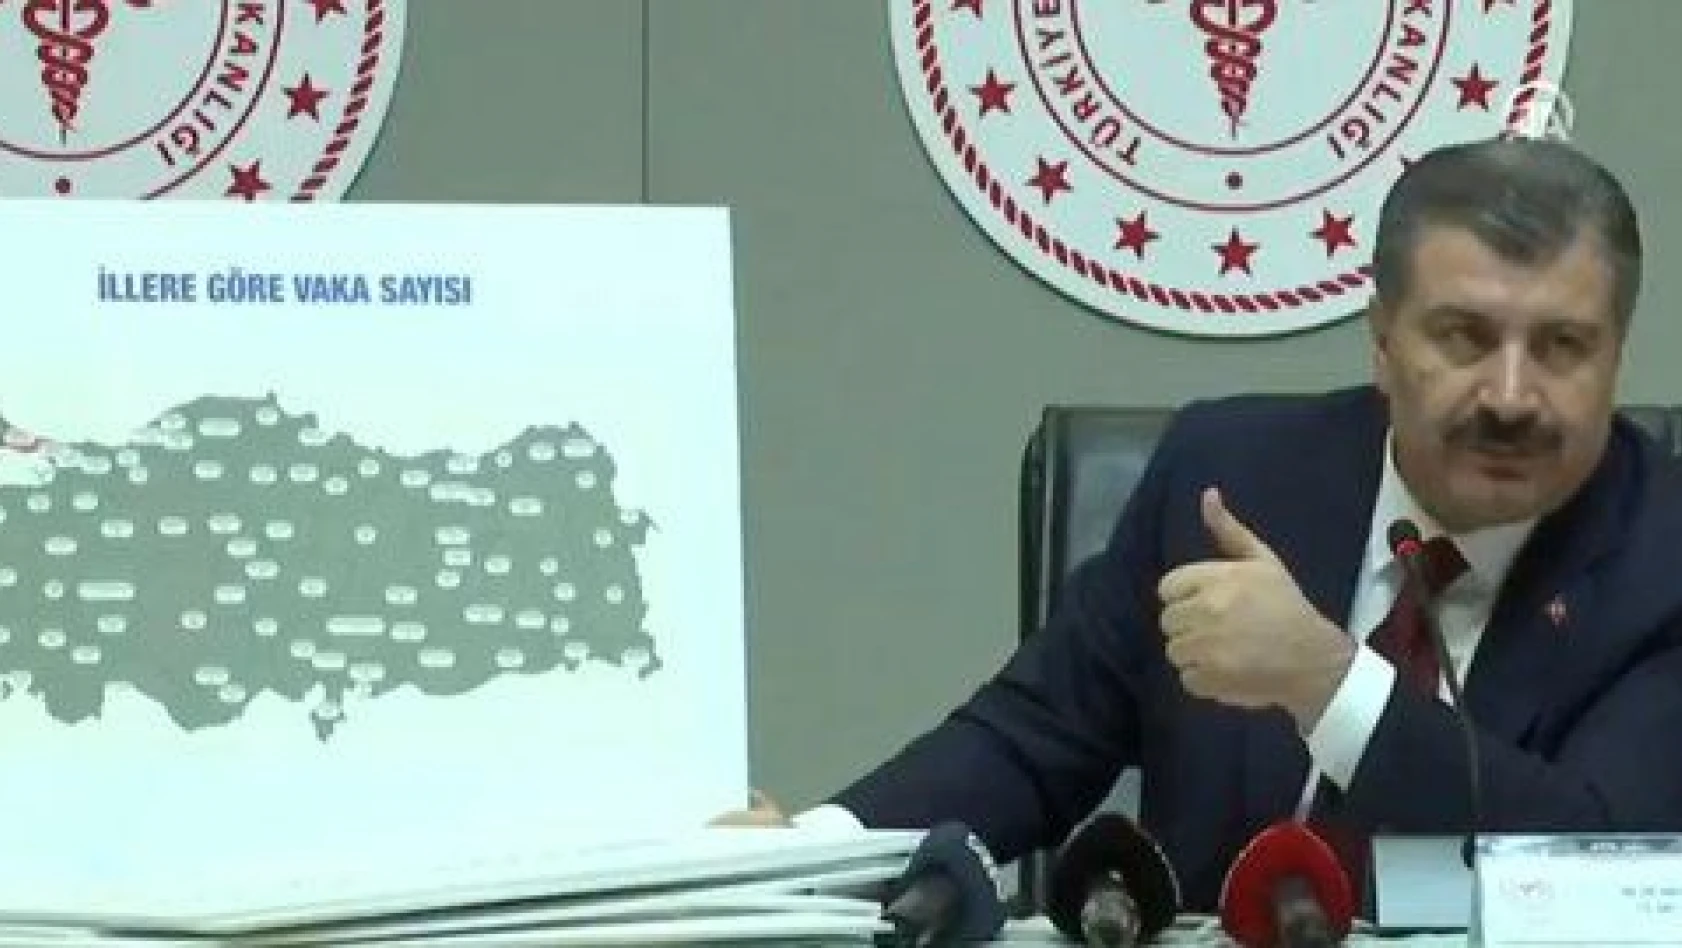 Bakanı Koca illere göre vaka sayısını açıkladı! Kayseri  'de kaç vaka var ?